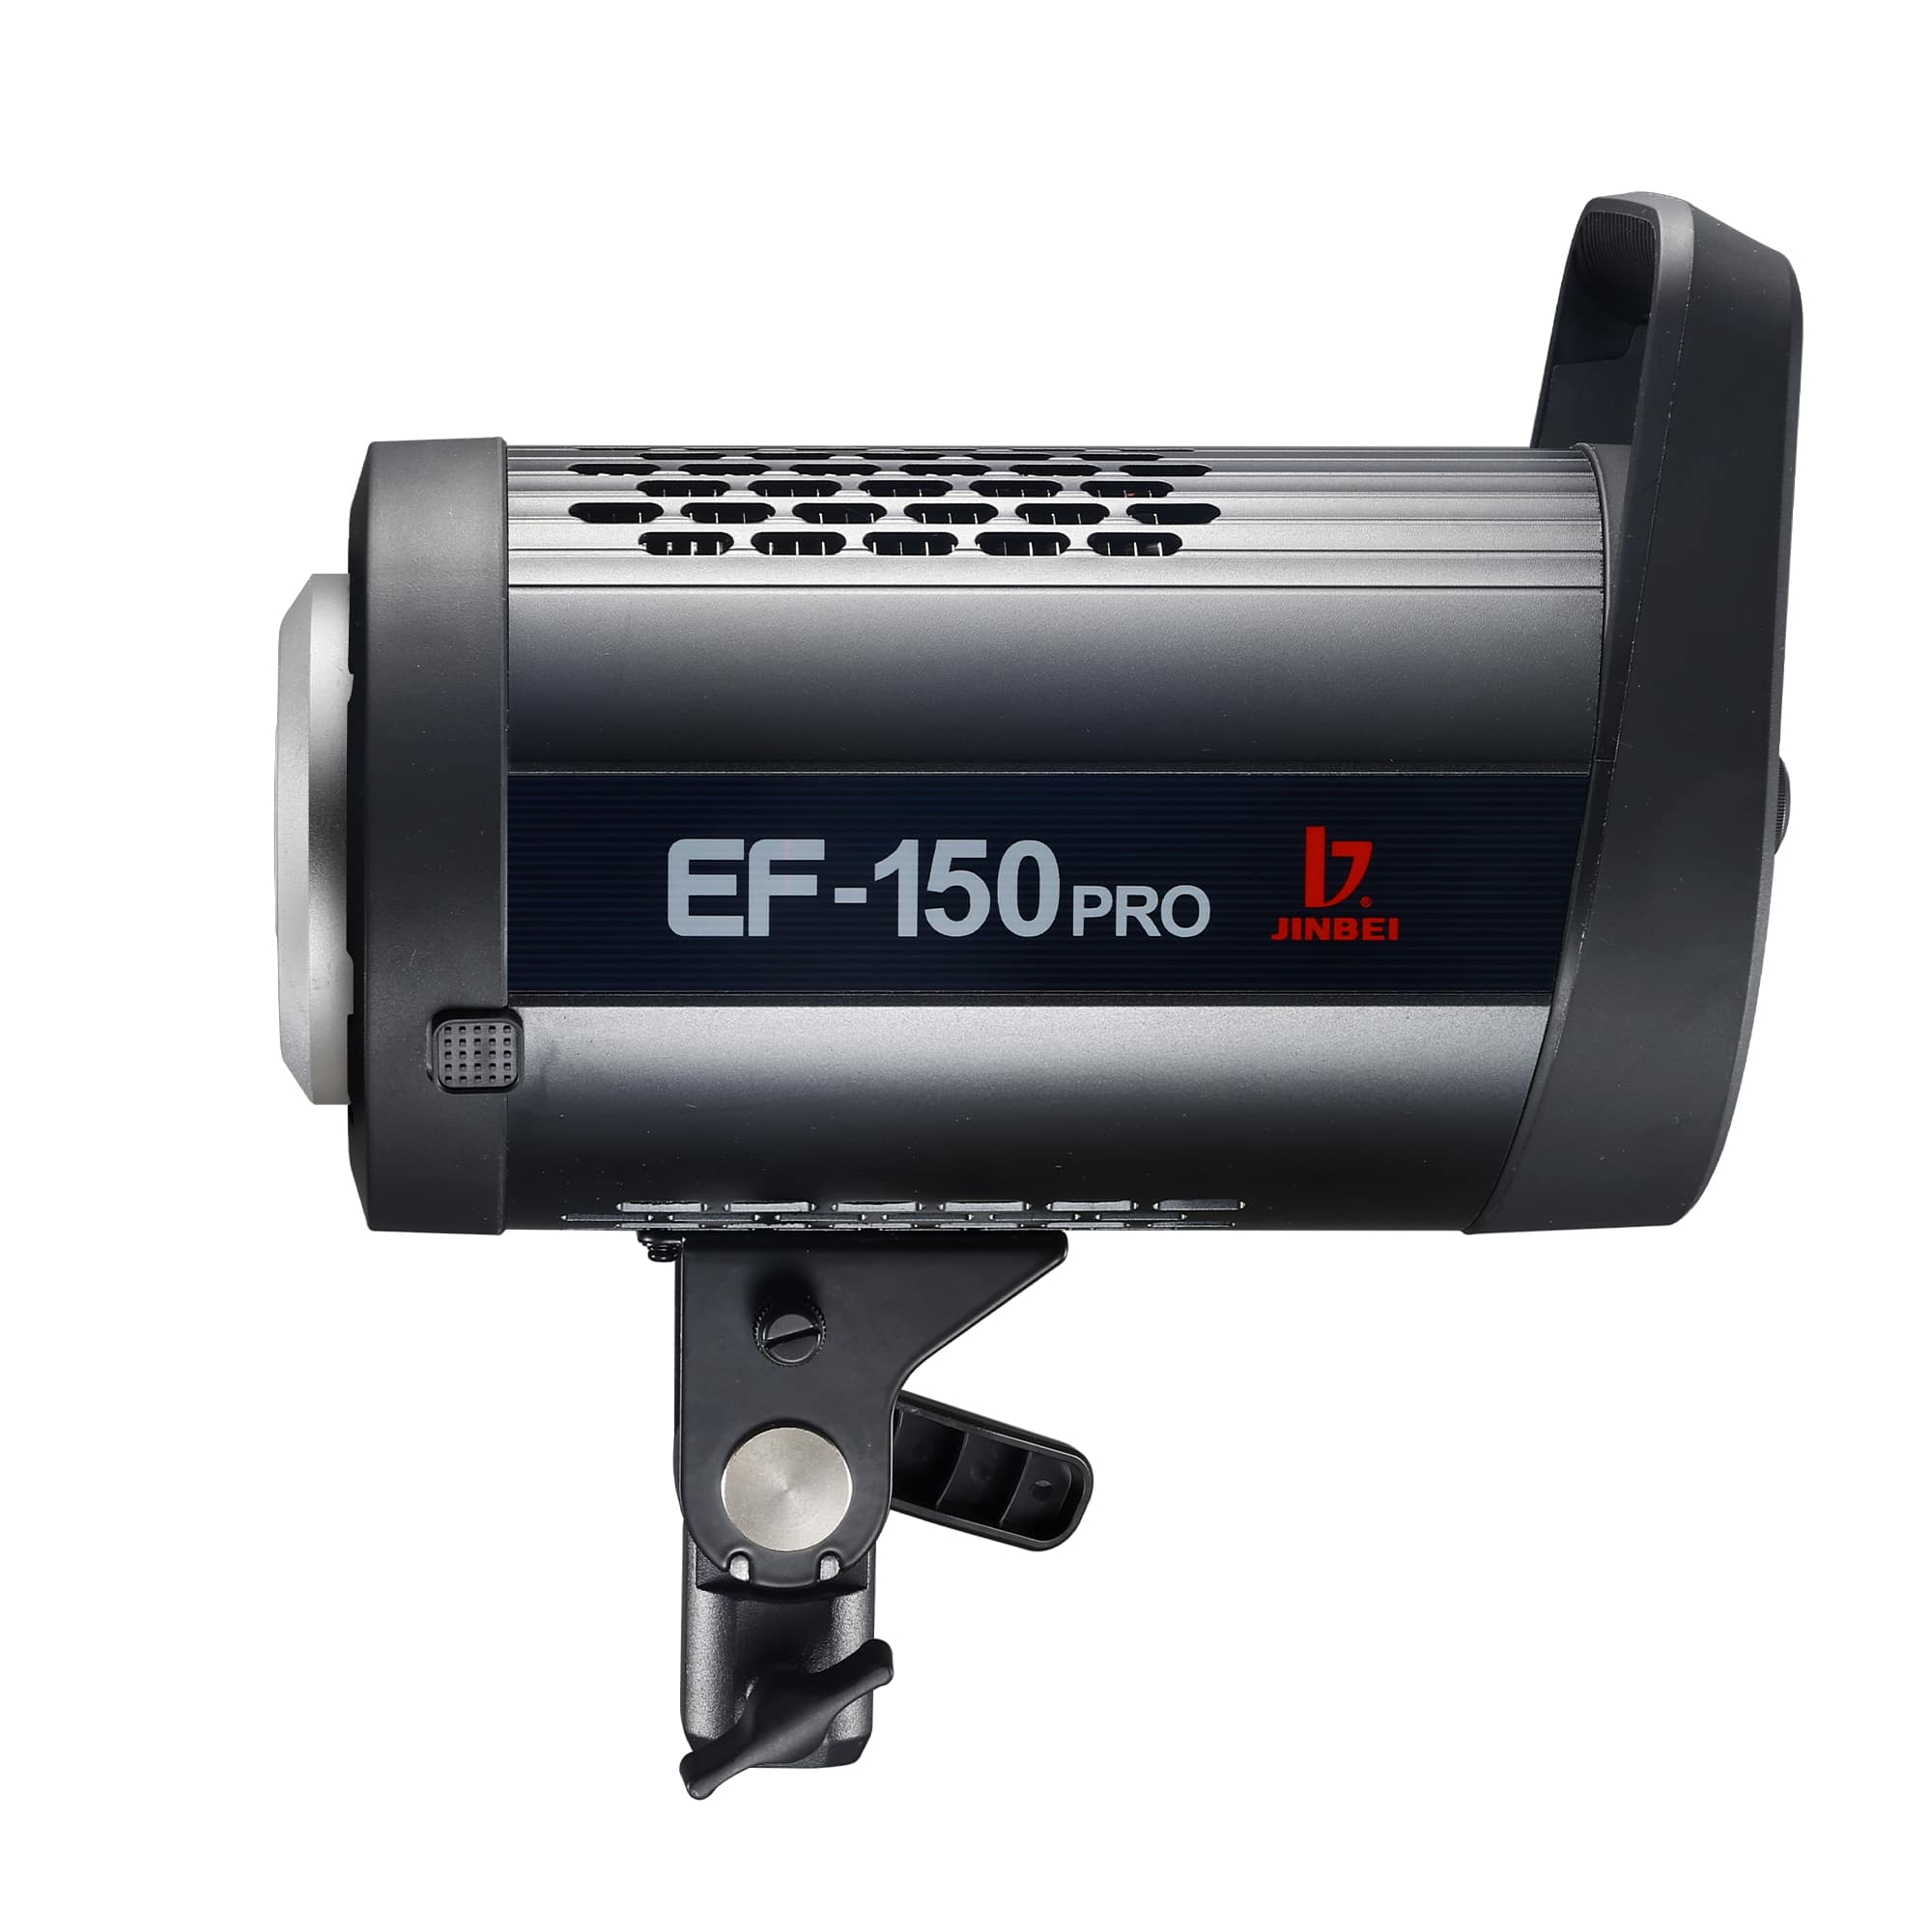 Produktfoto Jinbei EF-150 Pro LED-Videolicht seitlich